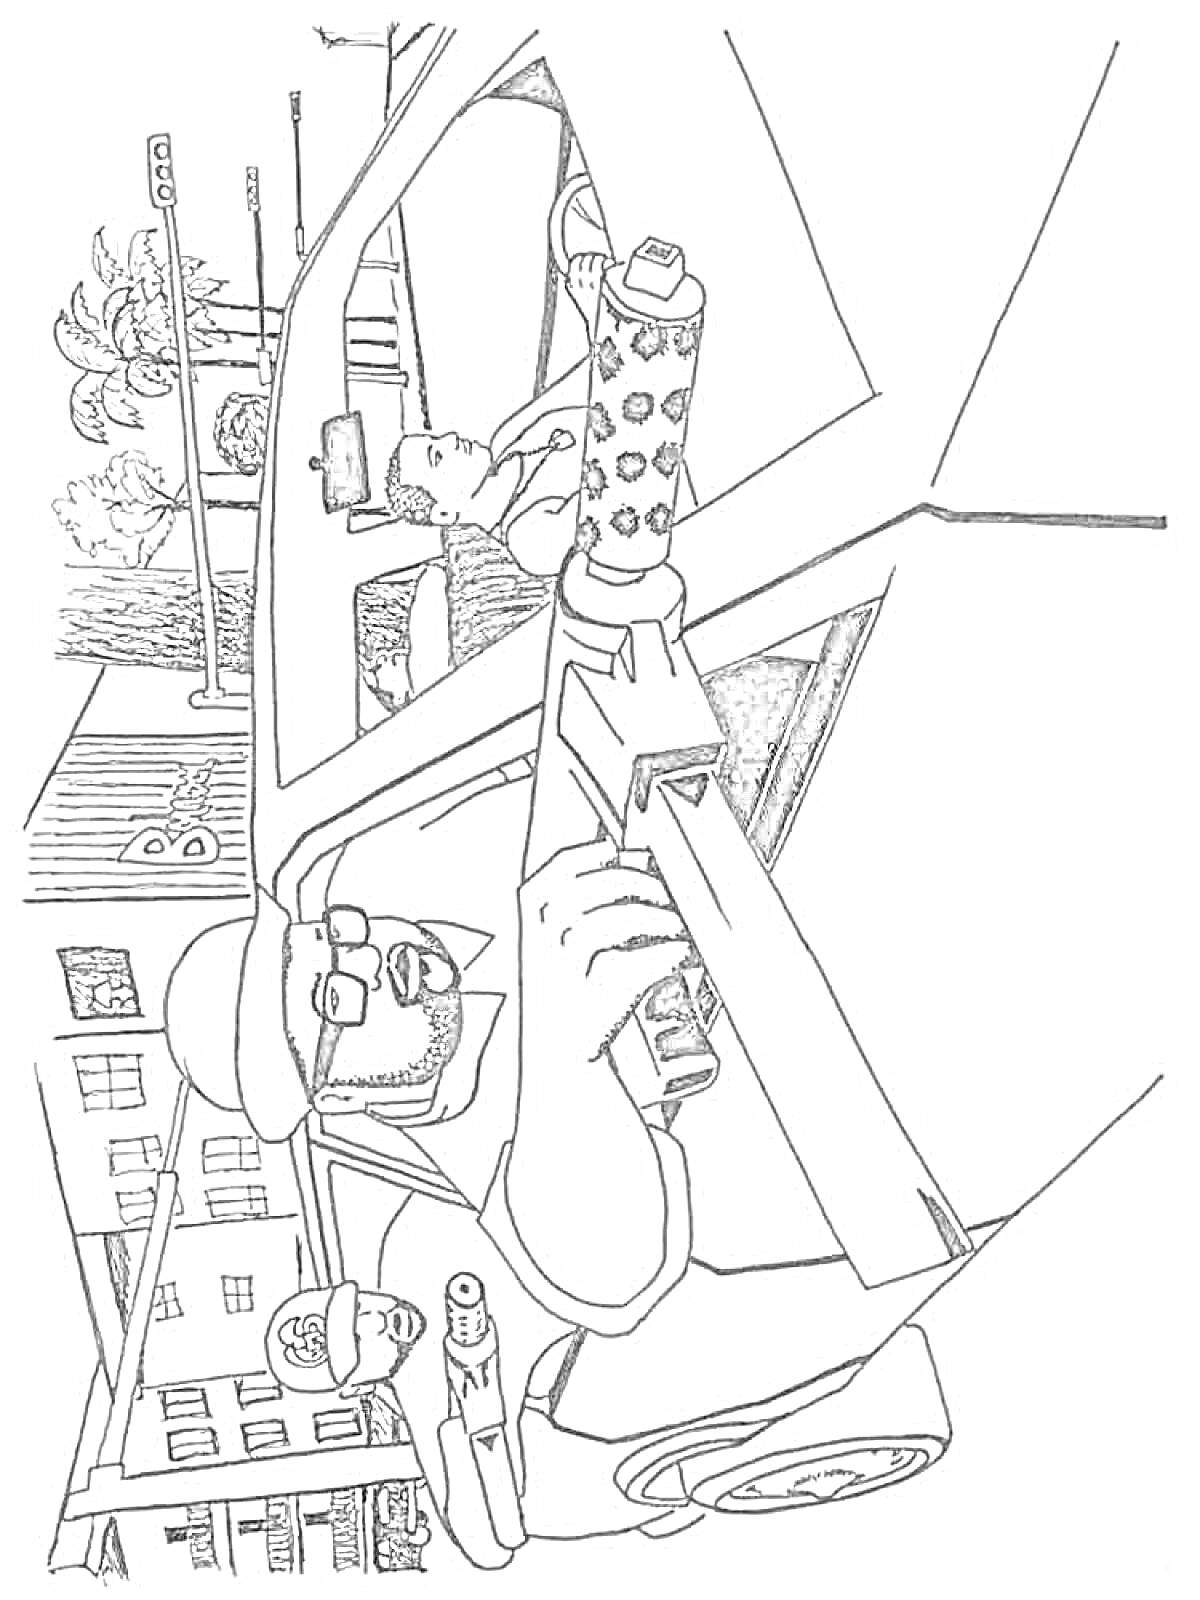 Шутка в стиле ГТА - трое персонажей в машине с оружием, здания и деревья на фоне